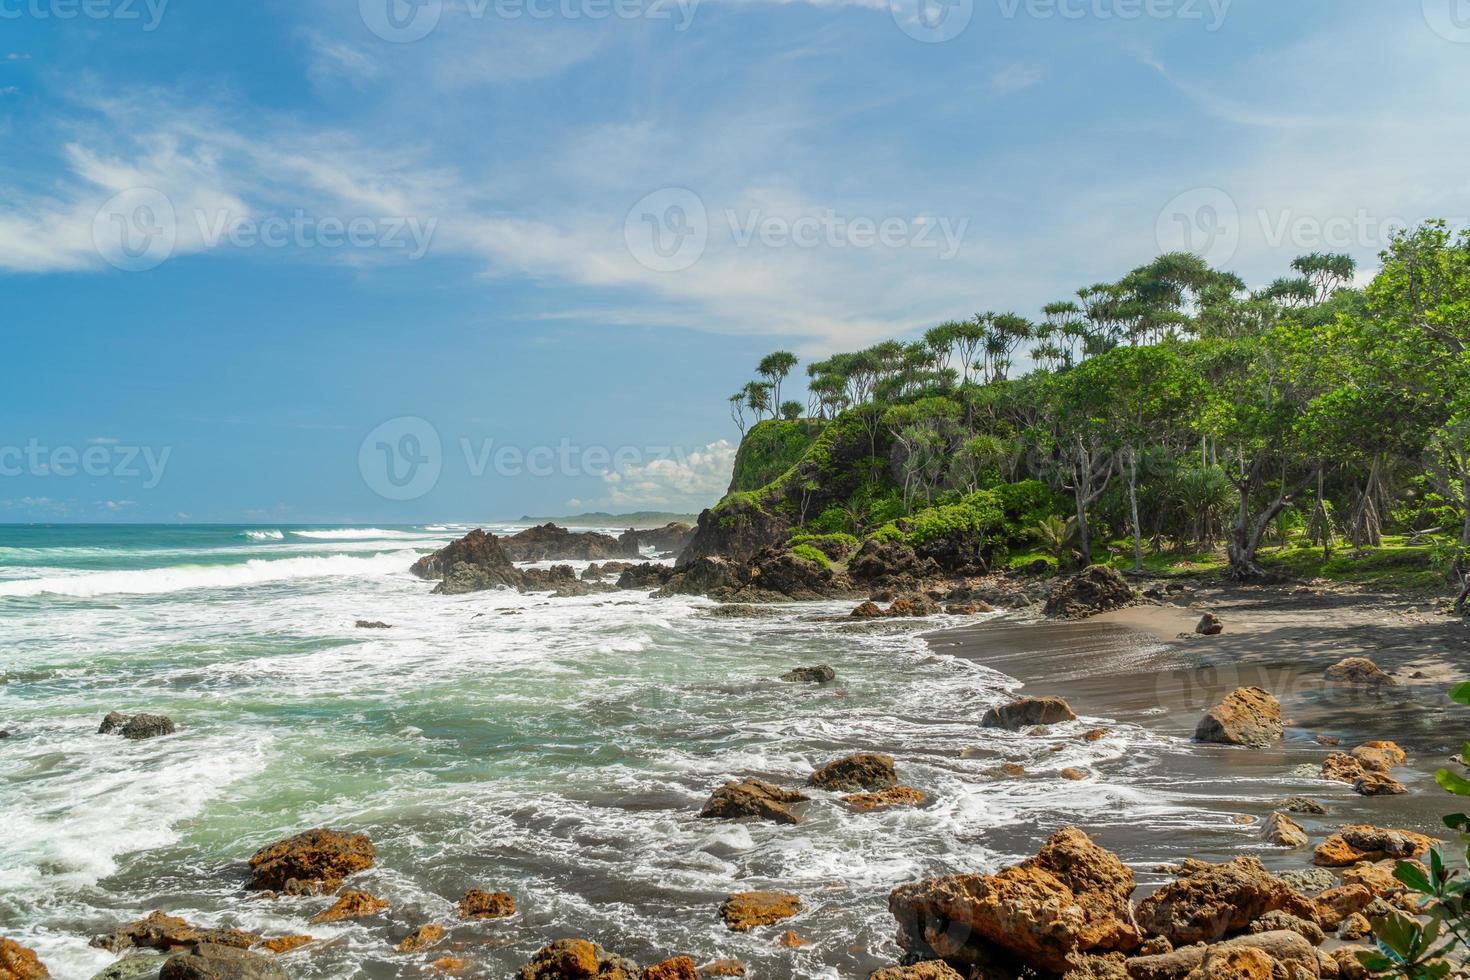 naturlig utsikt över kusten i Indonesien när vädret är soligt. karang tawulan strandturism i Indonesien foto